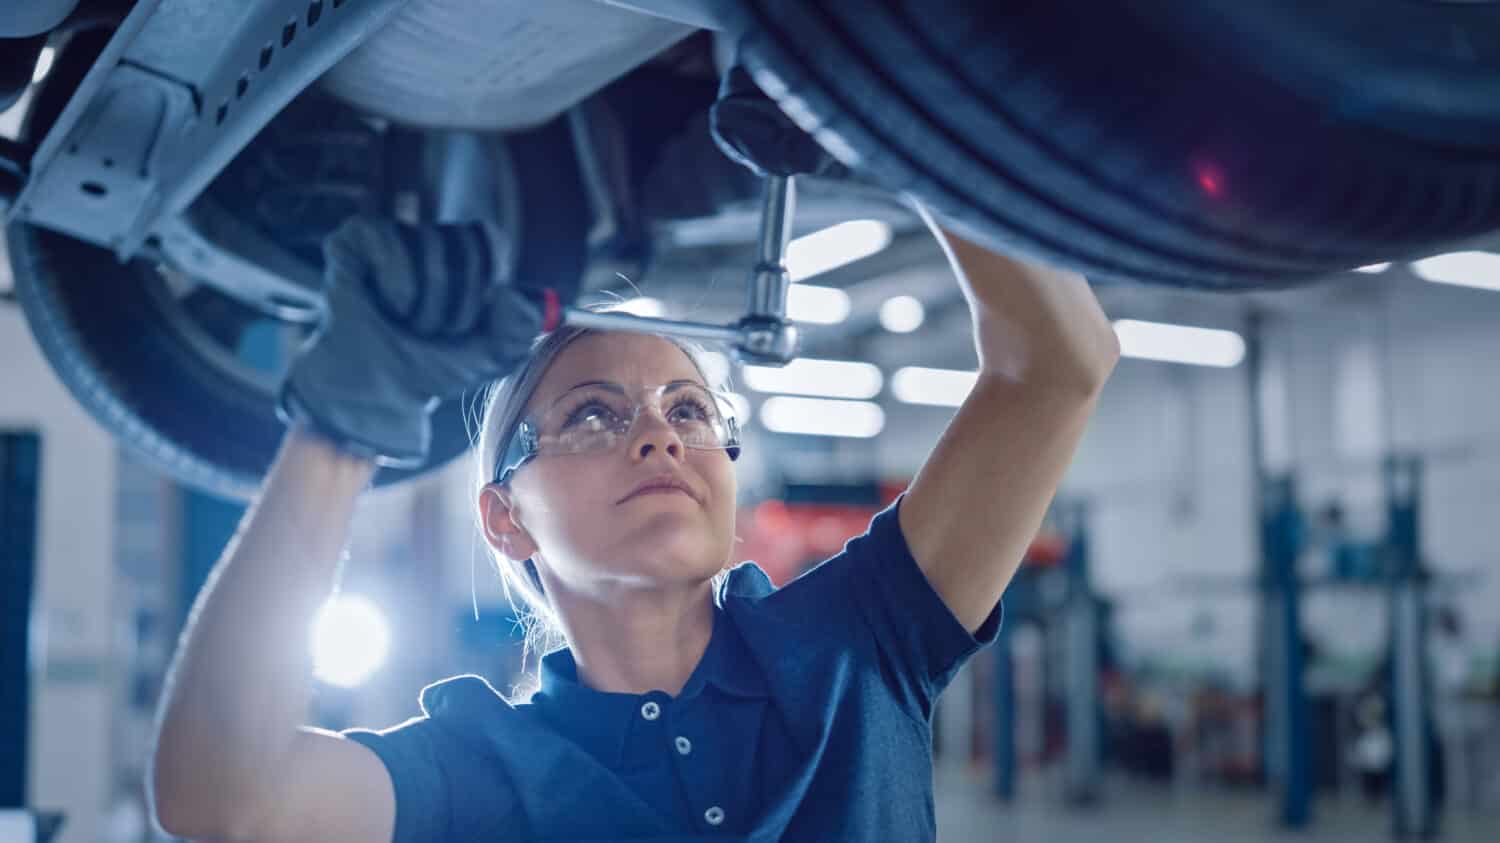 Ritratto di un meccanico femminile che lavora sotto il veicolo in un servizio di auto.  Empowering Woman Indossa guanti e utilizza un cricchetto sotto l'auto.  Officina pulita moderna.